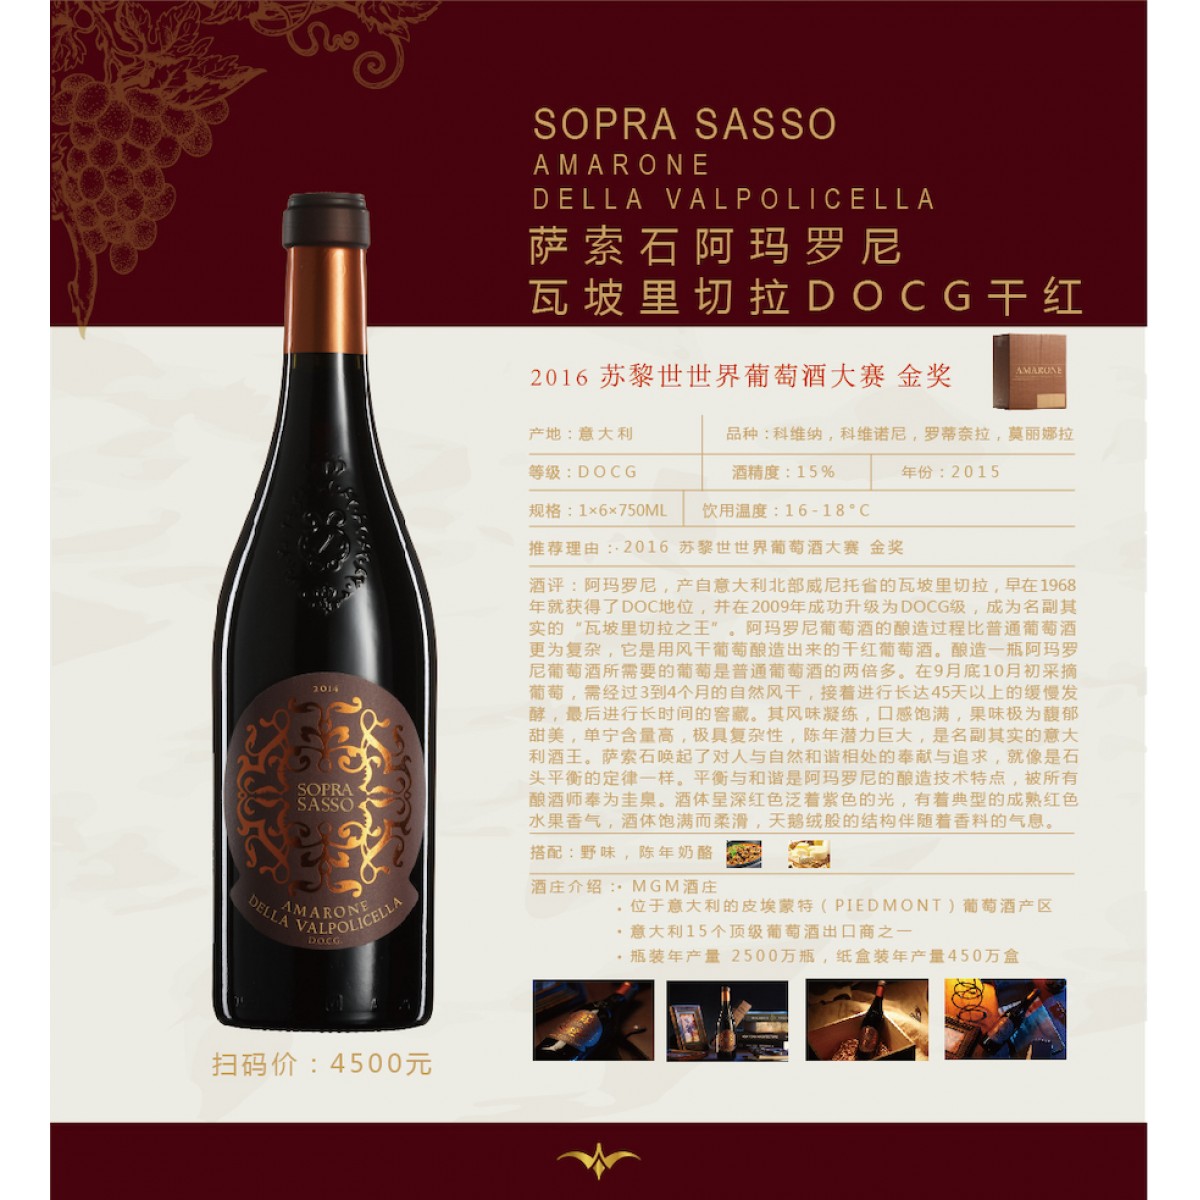 【意大利红酒】130_萨索石阿玛罗尼瓦坡里切拉DOCG干红 1×6×750ml 15° 2015年